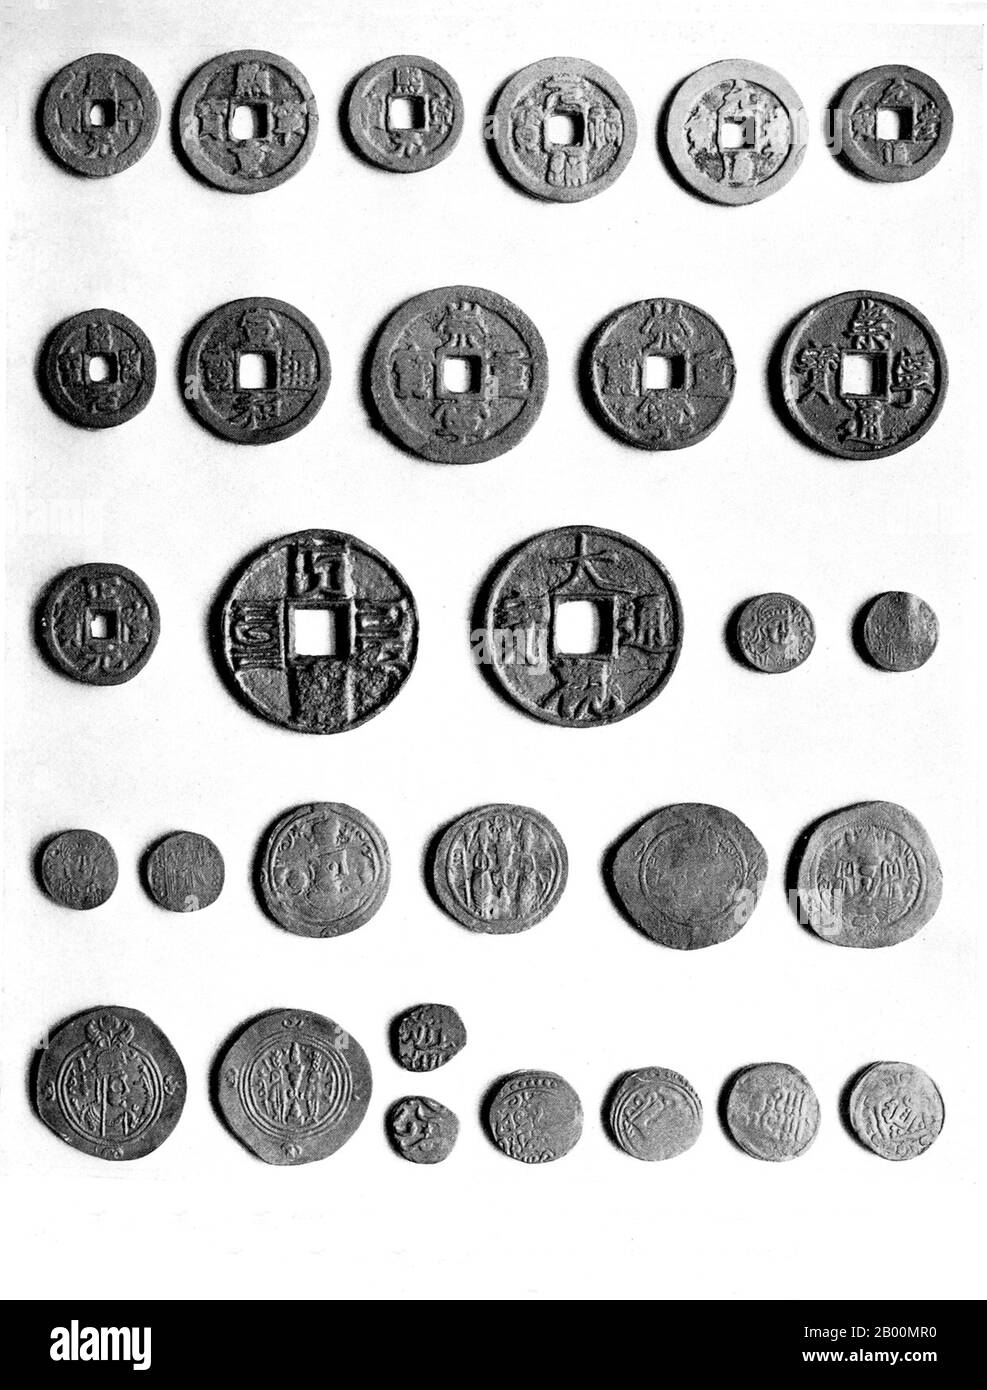 China: Mittelalterliche chinesische, byzantinische, sasanische und islamische Münzen aus Xinjiang. Die Astana Graves sind eine Reihe von unterirdischen Gräbern, die sich 6 km von der antiken Stadt Gaochang und 42 km von Turpan in Xinjiang, China, entfernt befinden. Die Gräber wurden von den Bewohnern von Gaochang, sowohl Bürger als auch Einheimische, für etwa 600 Jahre von 200 CE – 800 CE verwendet. Der Komplex umfasst 10 Quadratkilometer und enthält über 1,000 Gräber. Verschiedene Grundstücke für getrennte Kasten und Familien sind durch Schotterteiler gekennzeichnet. Aufgrund der trockenen Umgebung sind viele wichtige Artefakte am Grab gut erhalten. Stockfoto